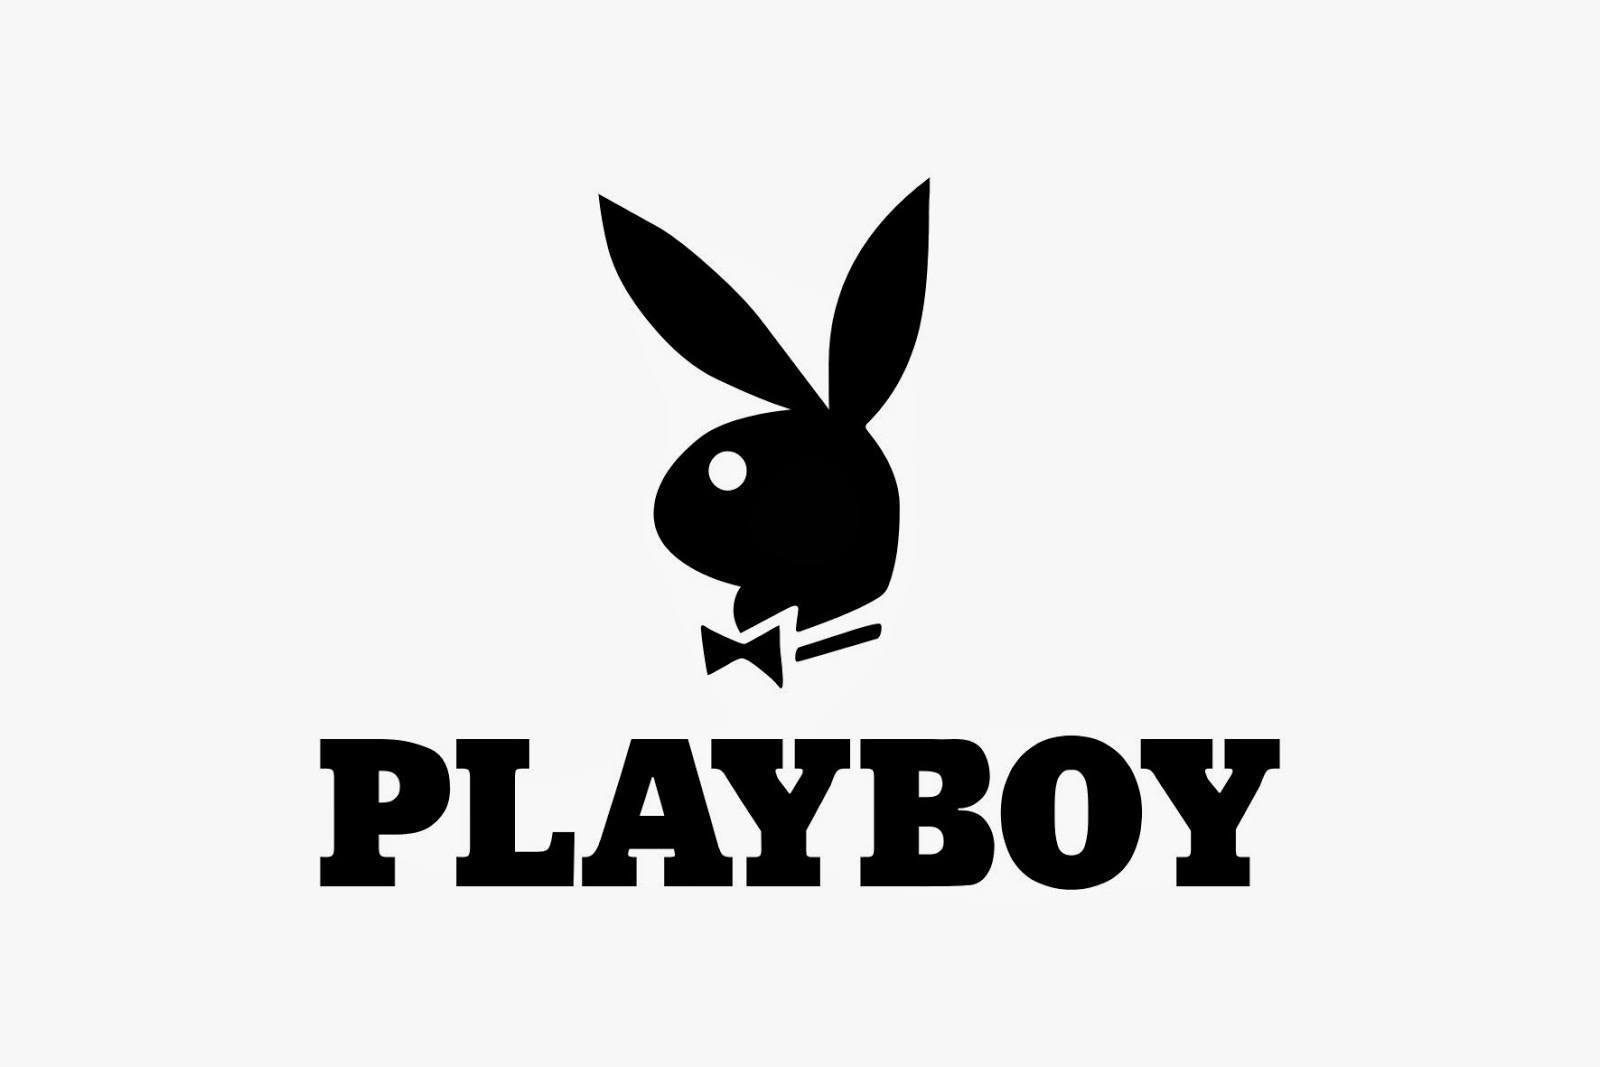 Playboy regala 224 páginas